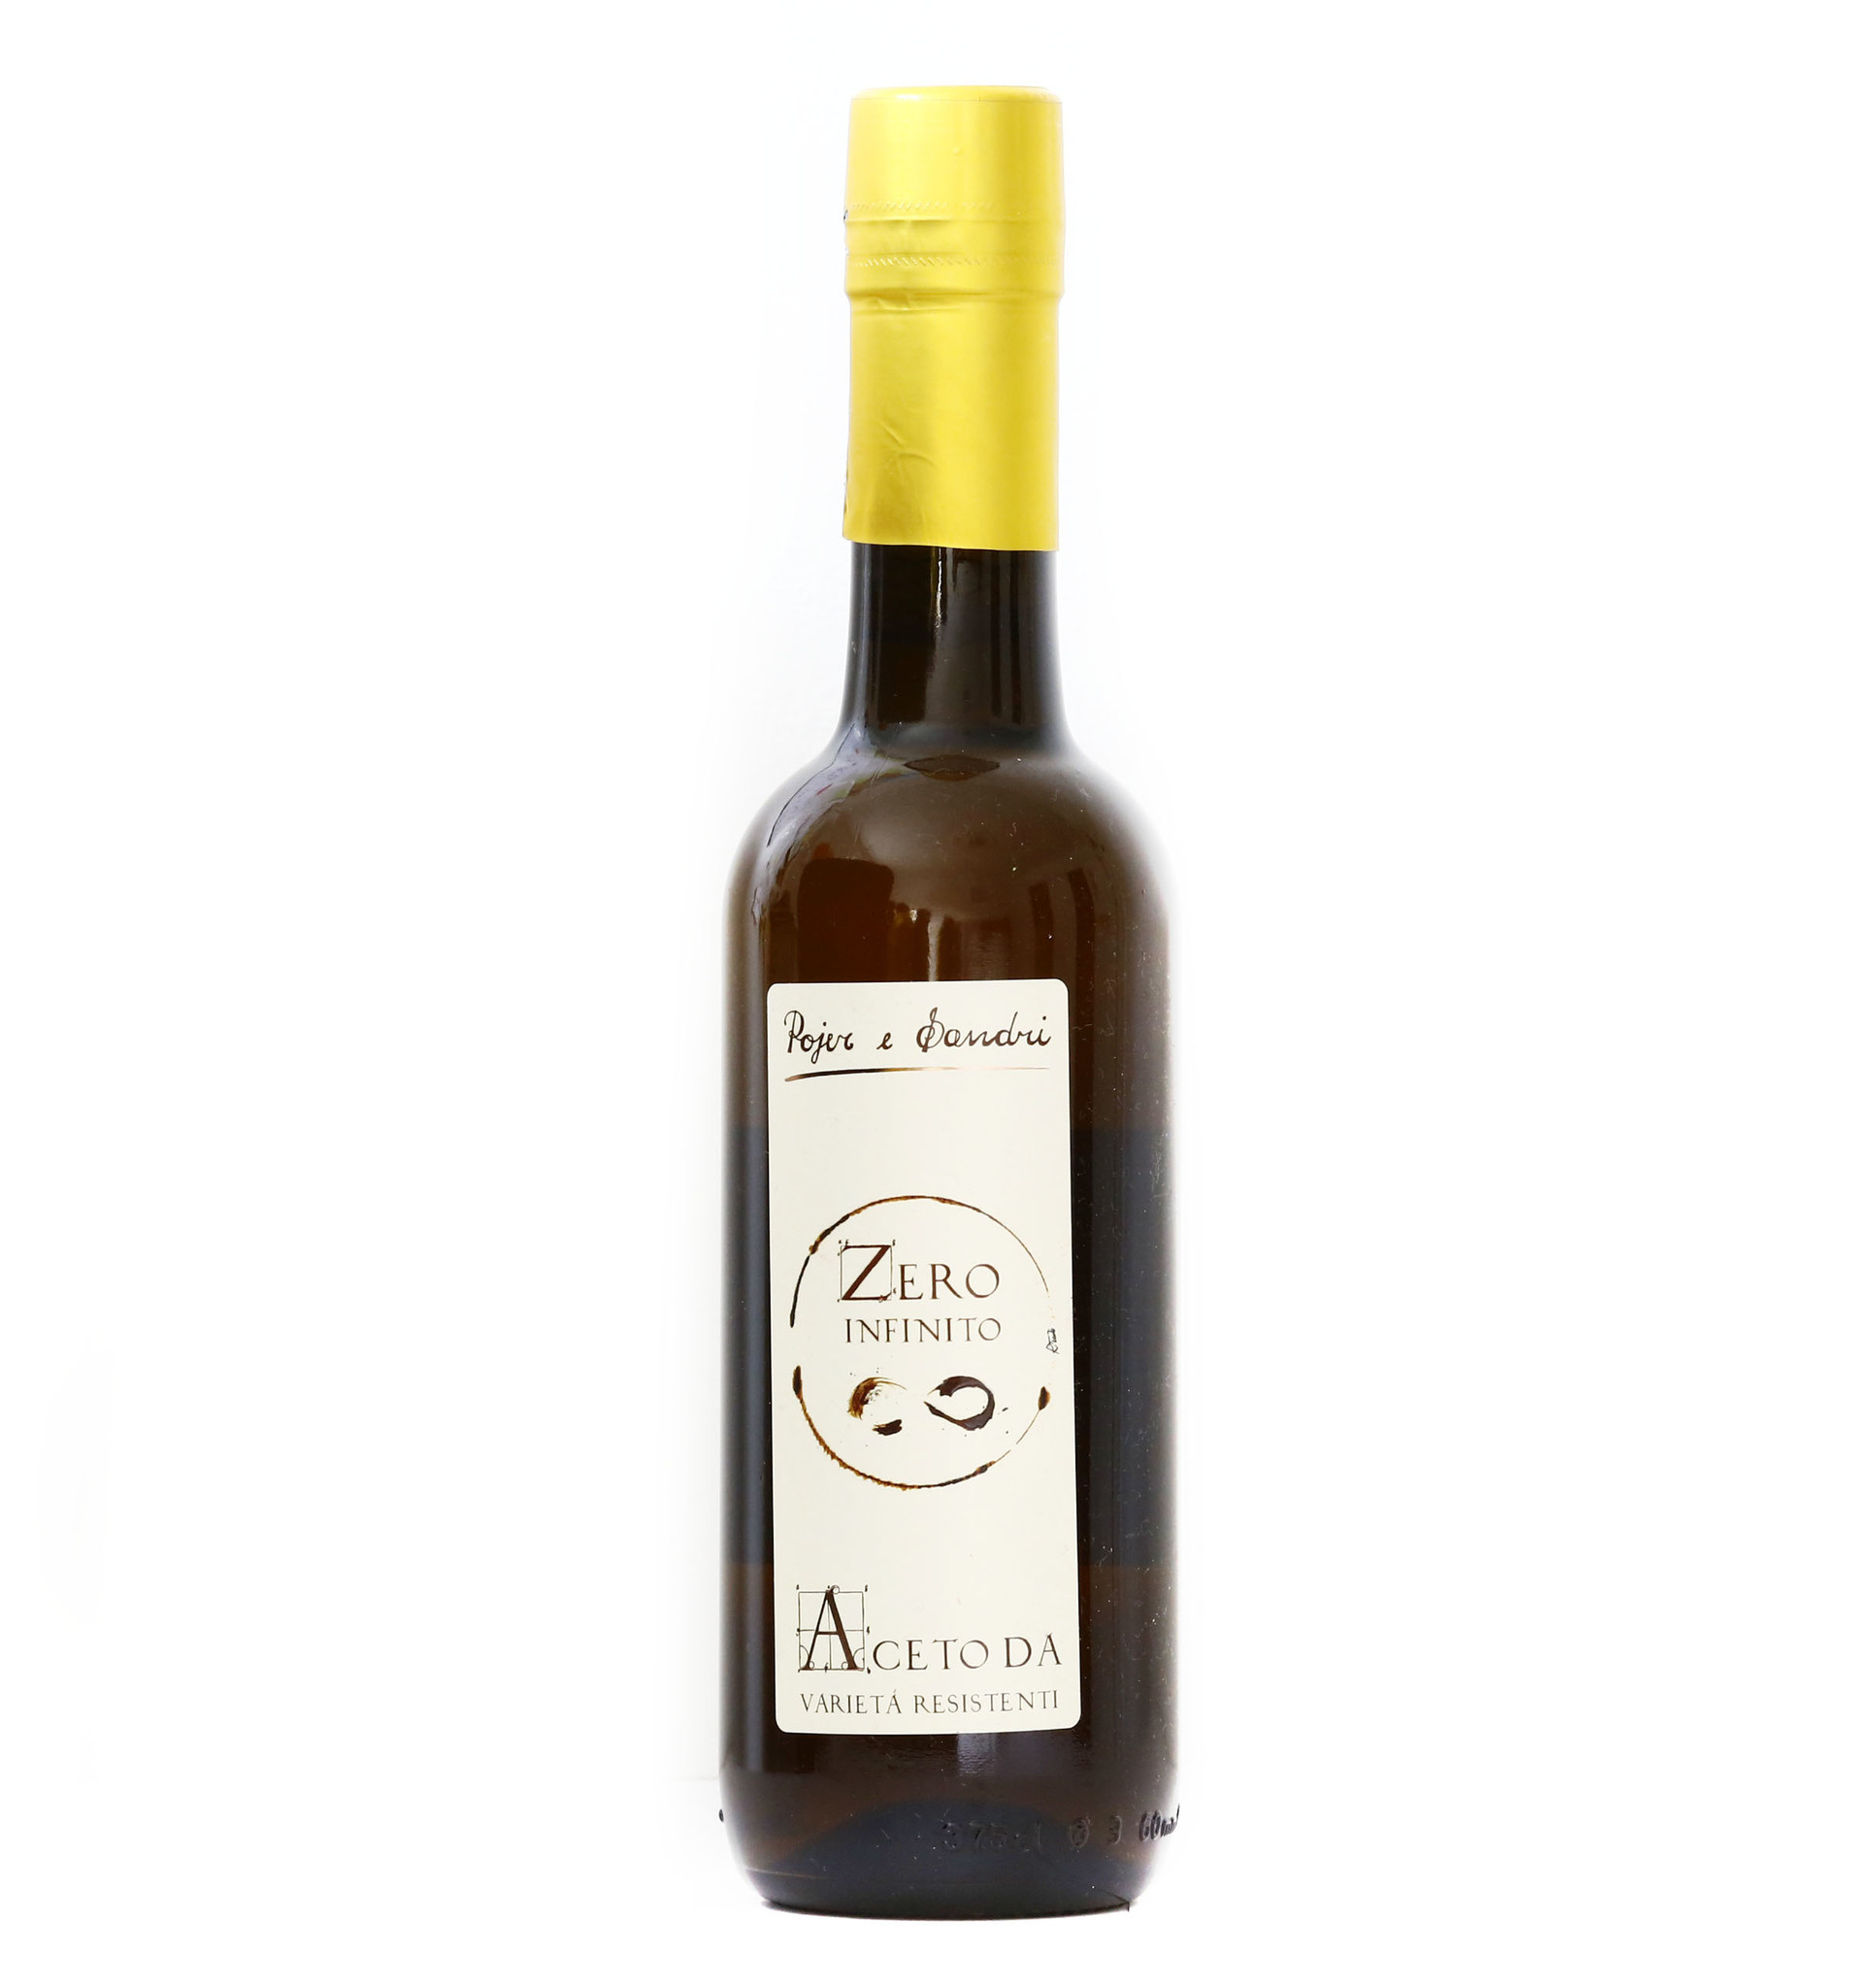 Pojer & Sandri "Pojer & Sandri" White Wine Vinegar "Zero Infinito" 6/250ml